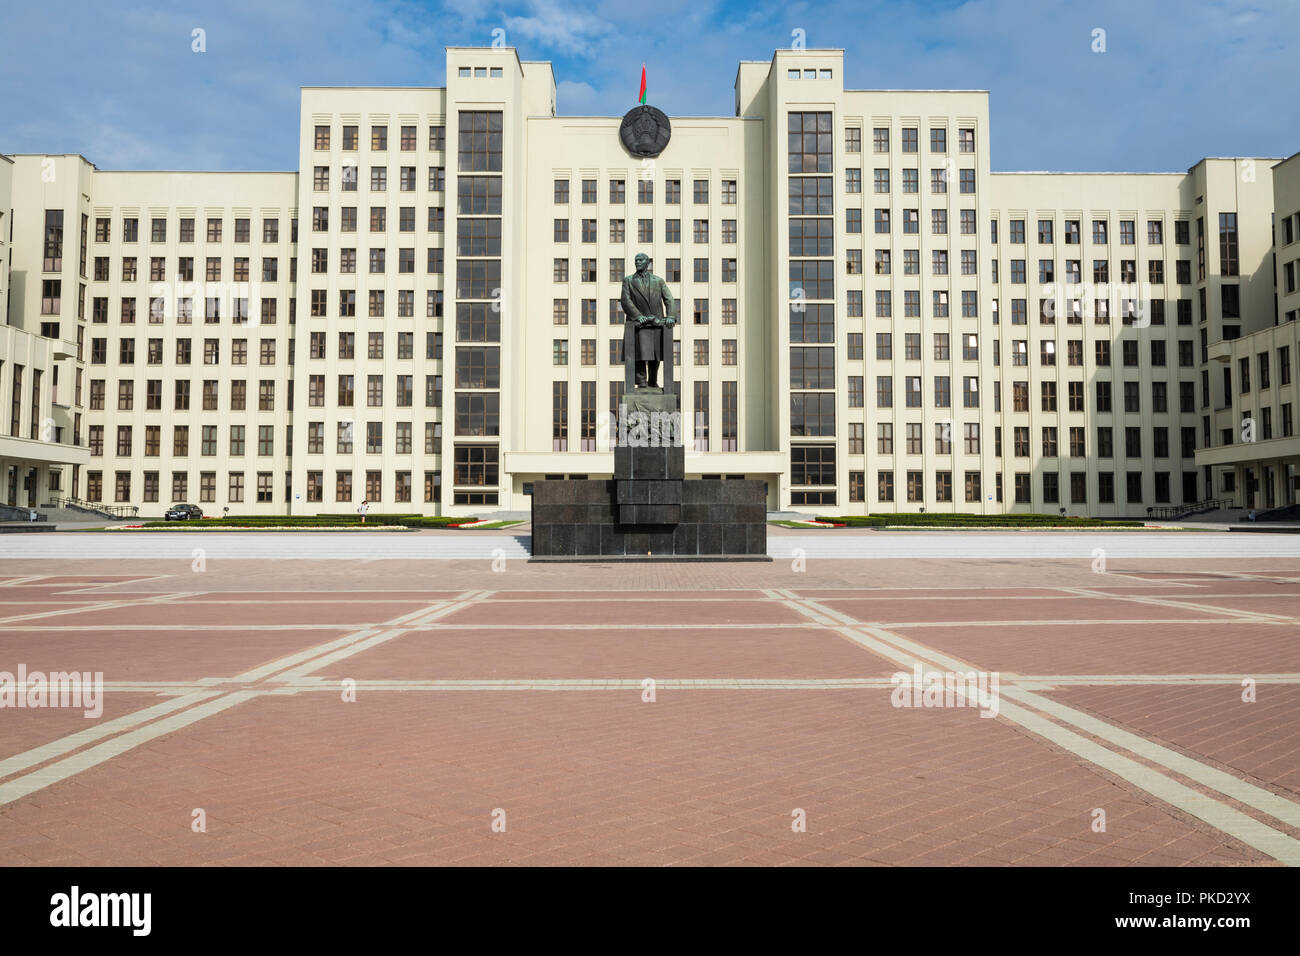 MINSK, Bielorussia - 11 settembre 2018: Monumento di Lenin vicino al Palazzo del Governo della Repubblica di Bielorussia. Piazza Indipendenza, Minsk, Bielorussia. Foto Stock